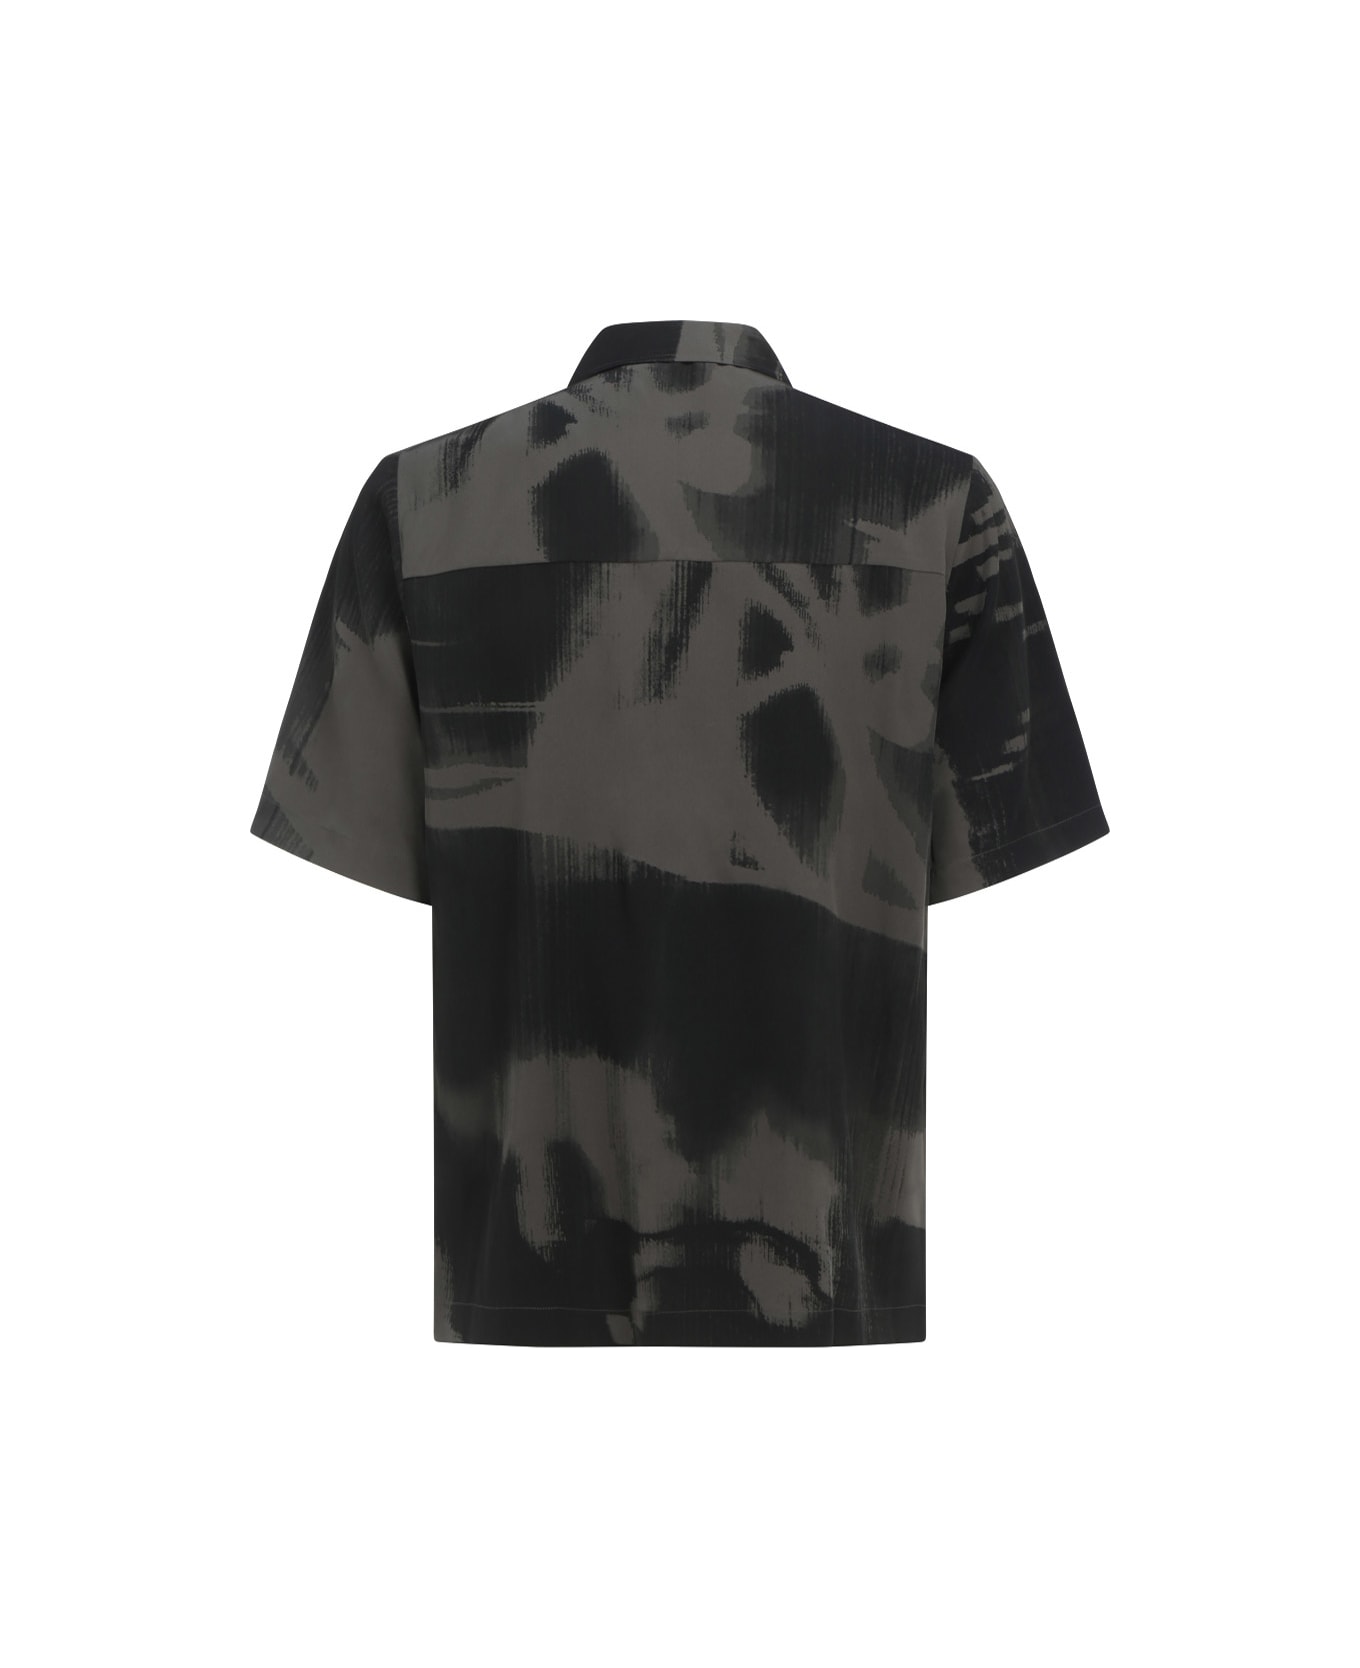 McQ Alexander McQueen Shirt - Darkest Black